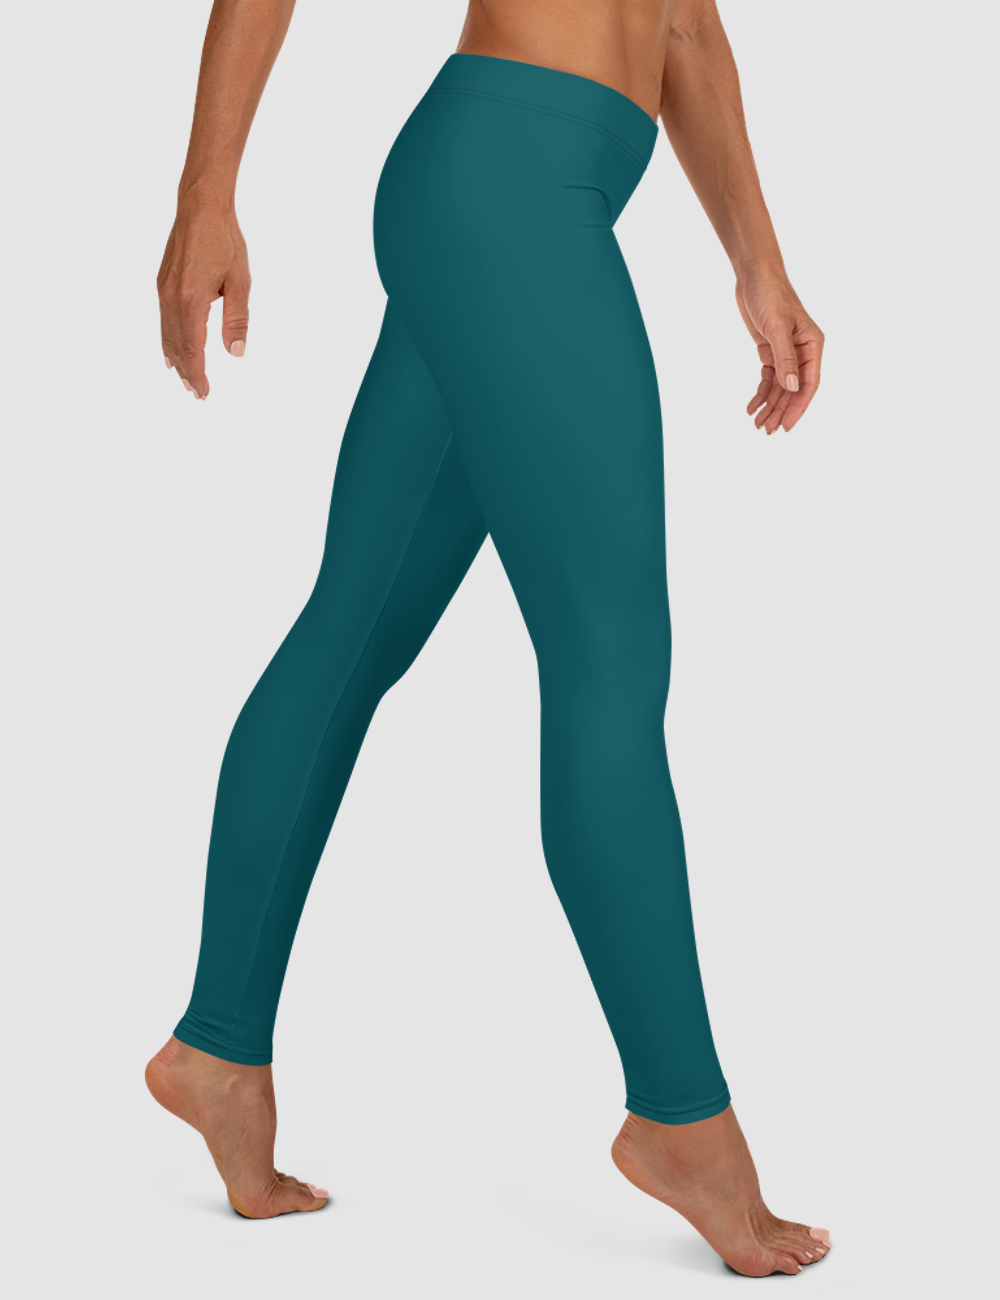 Solid Dark Emerald | Women's Standard Yoga Leggings OniTakai